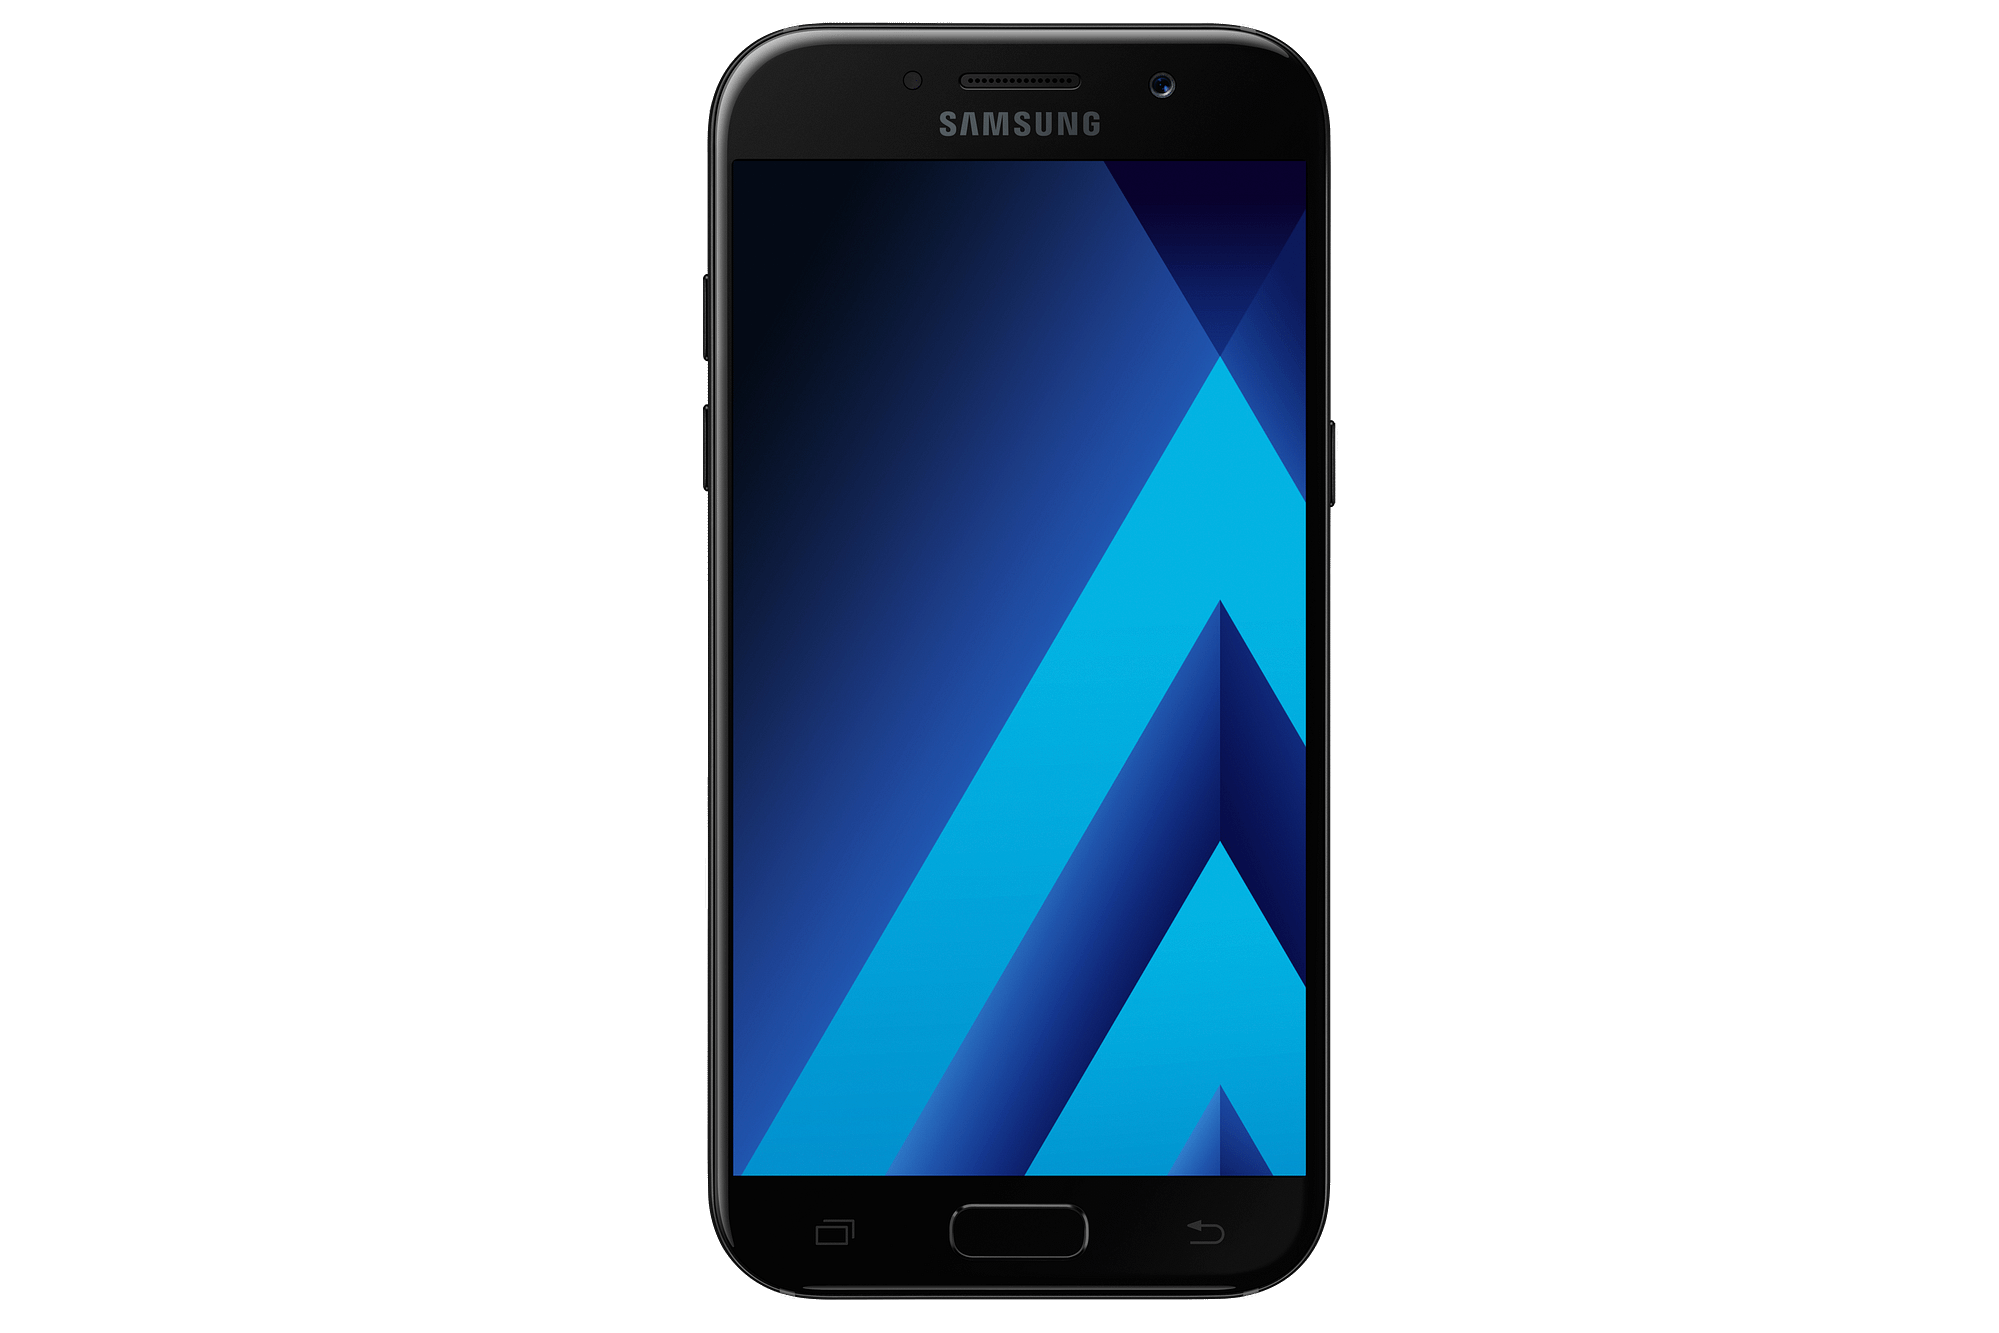 Prix réparation Samsung Galaxy A5 par Alloréparation